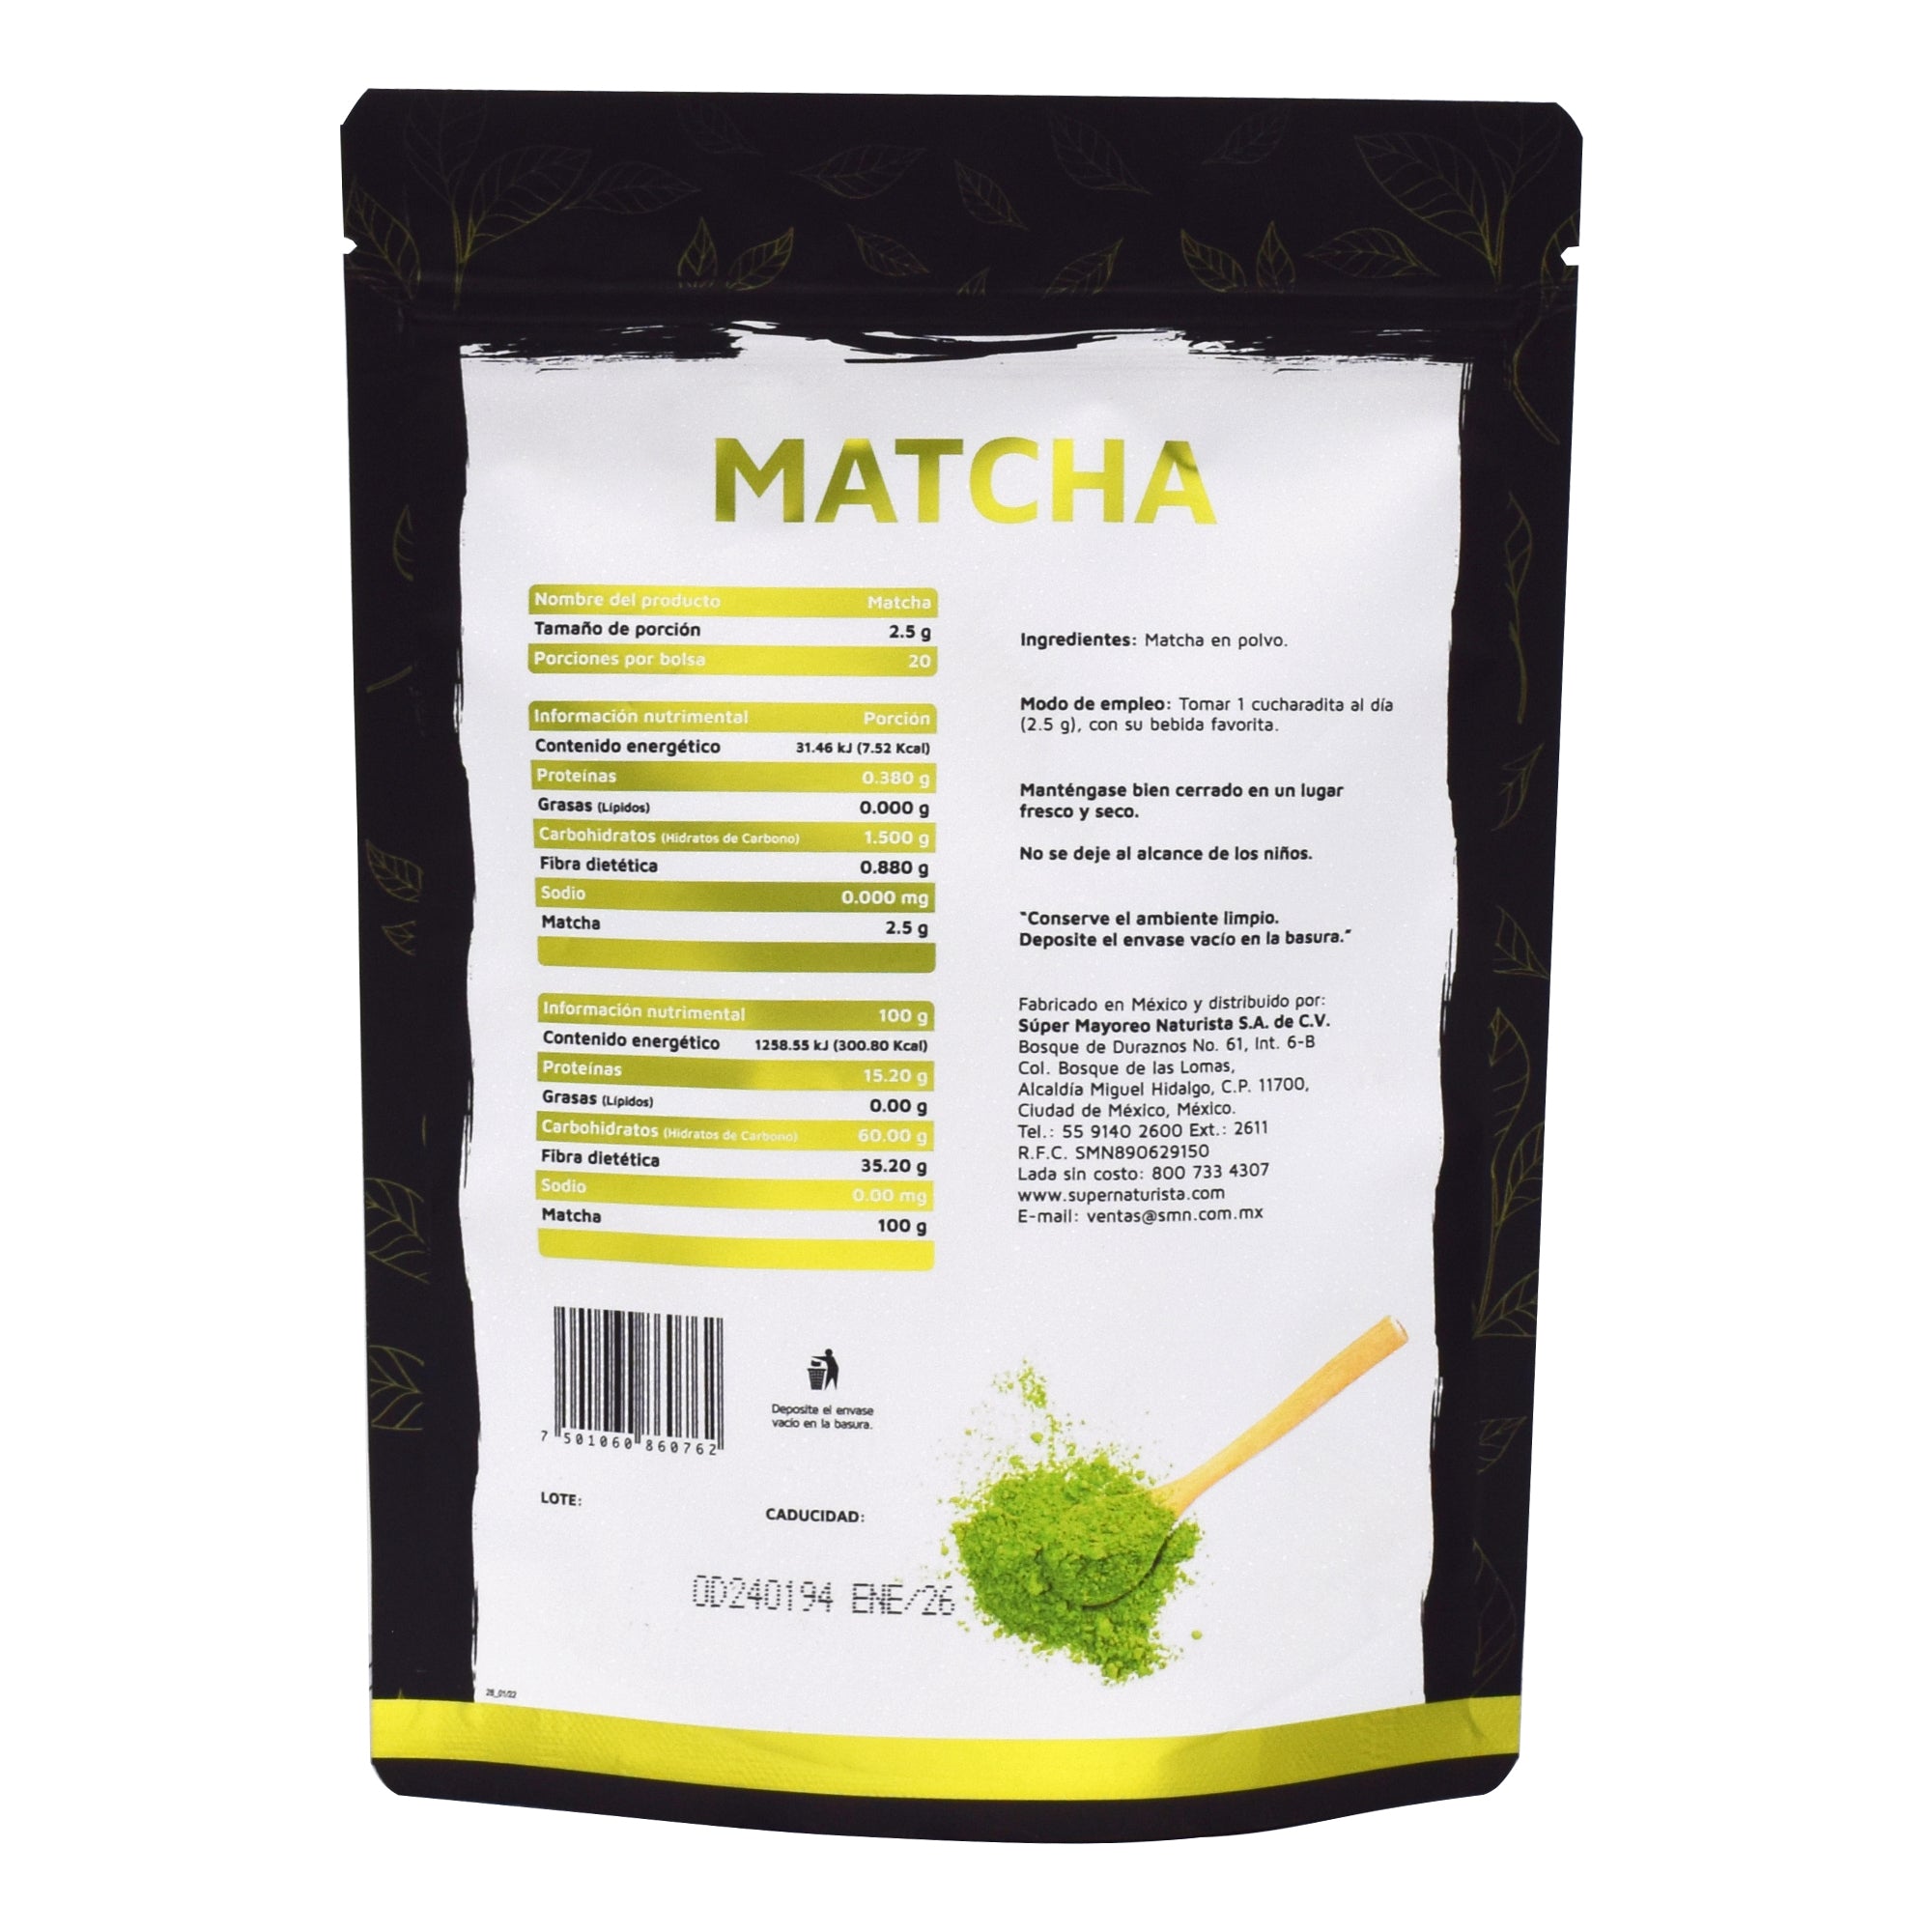 Super Naturista - 🍵 El té matcha son hojas de té verde, puras y molidas.  Tomarlo durante la mañana te mantendrá alerta y con energía para tu día y  no provoca el